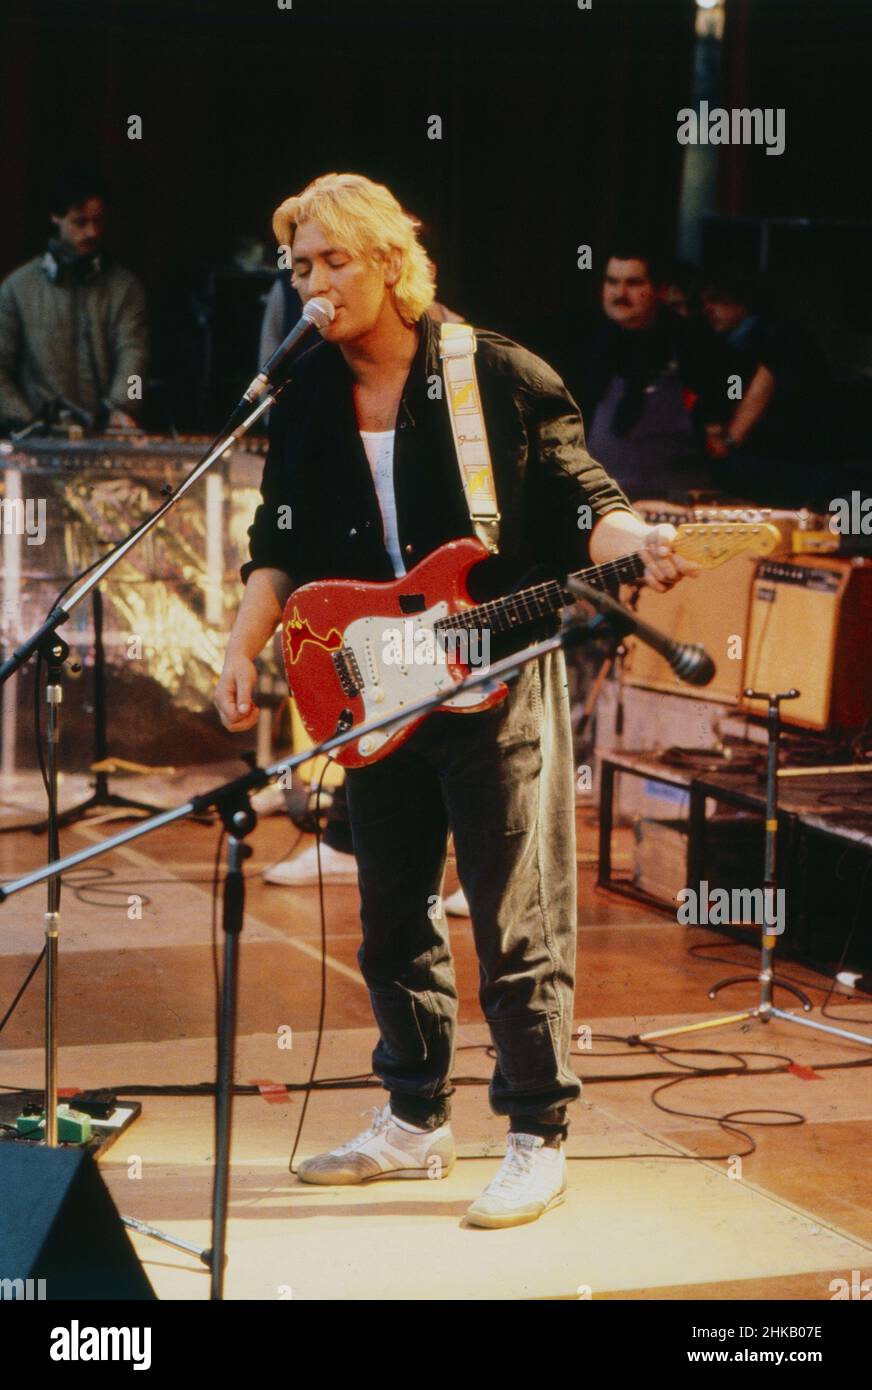 Chris Rea, britischer Sänger, Komponist und Gitarrist, bei einem Auftritt, Deutschland 1984. Stock Photo